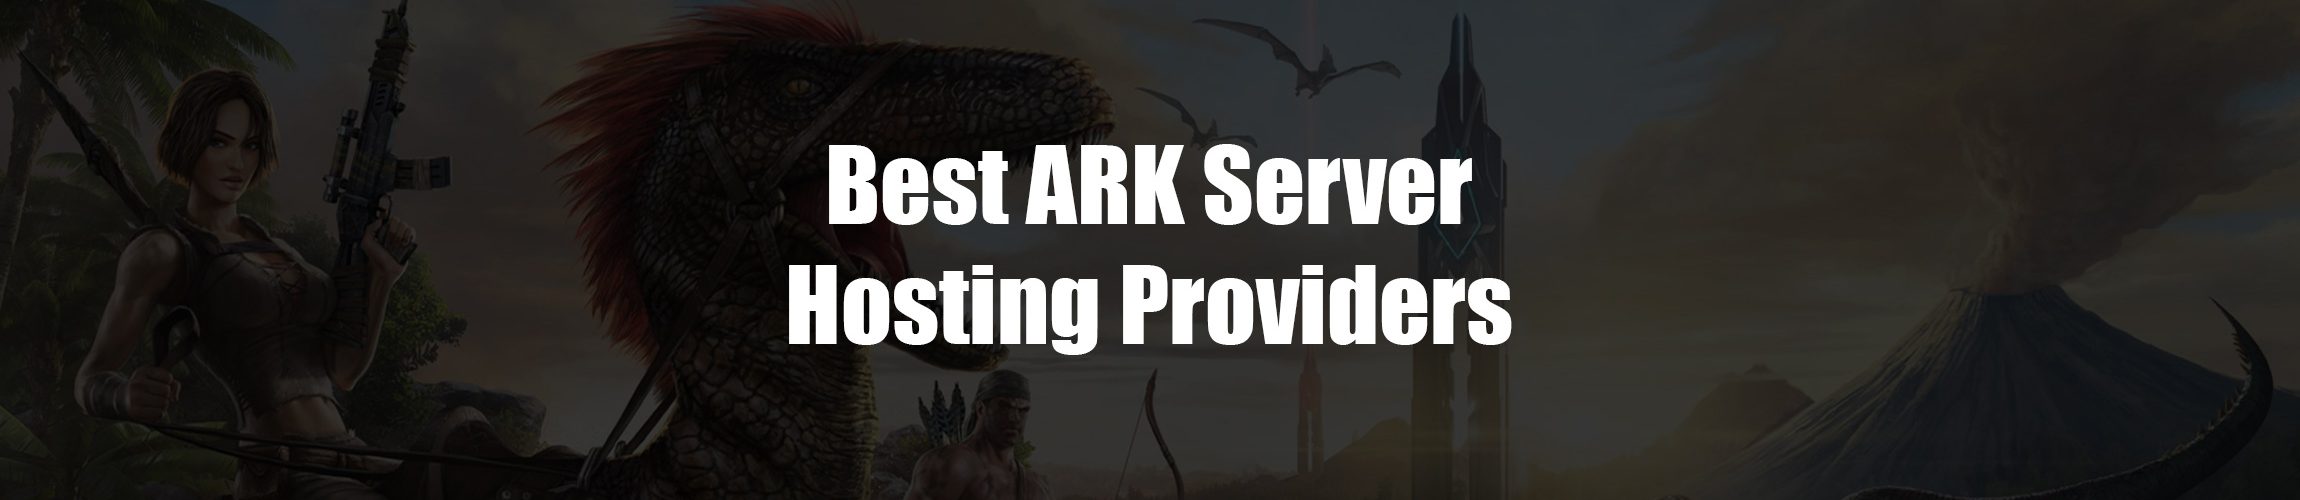 Best ARK Server Hosting Providers